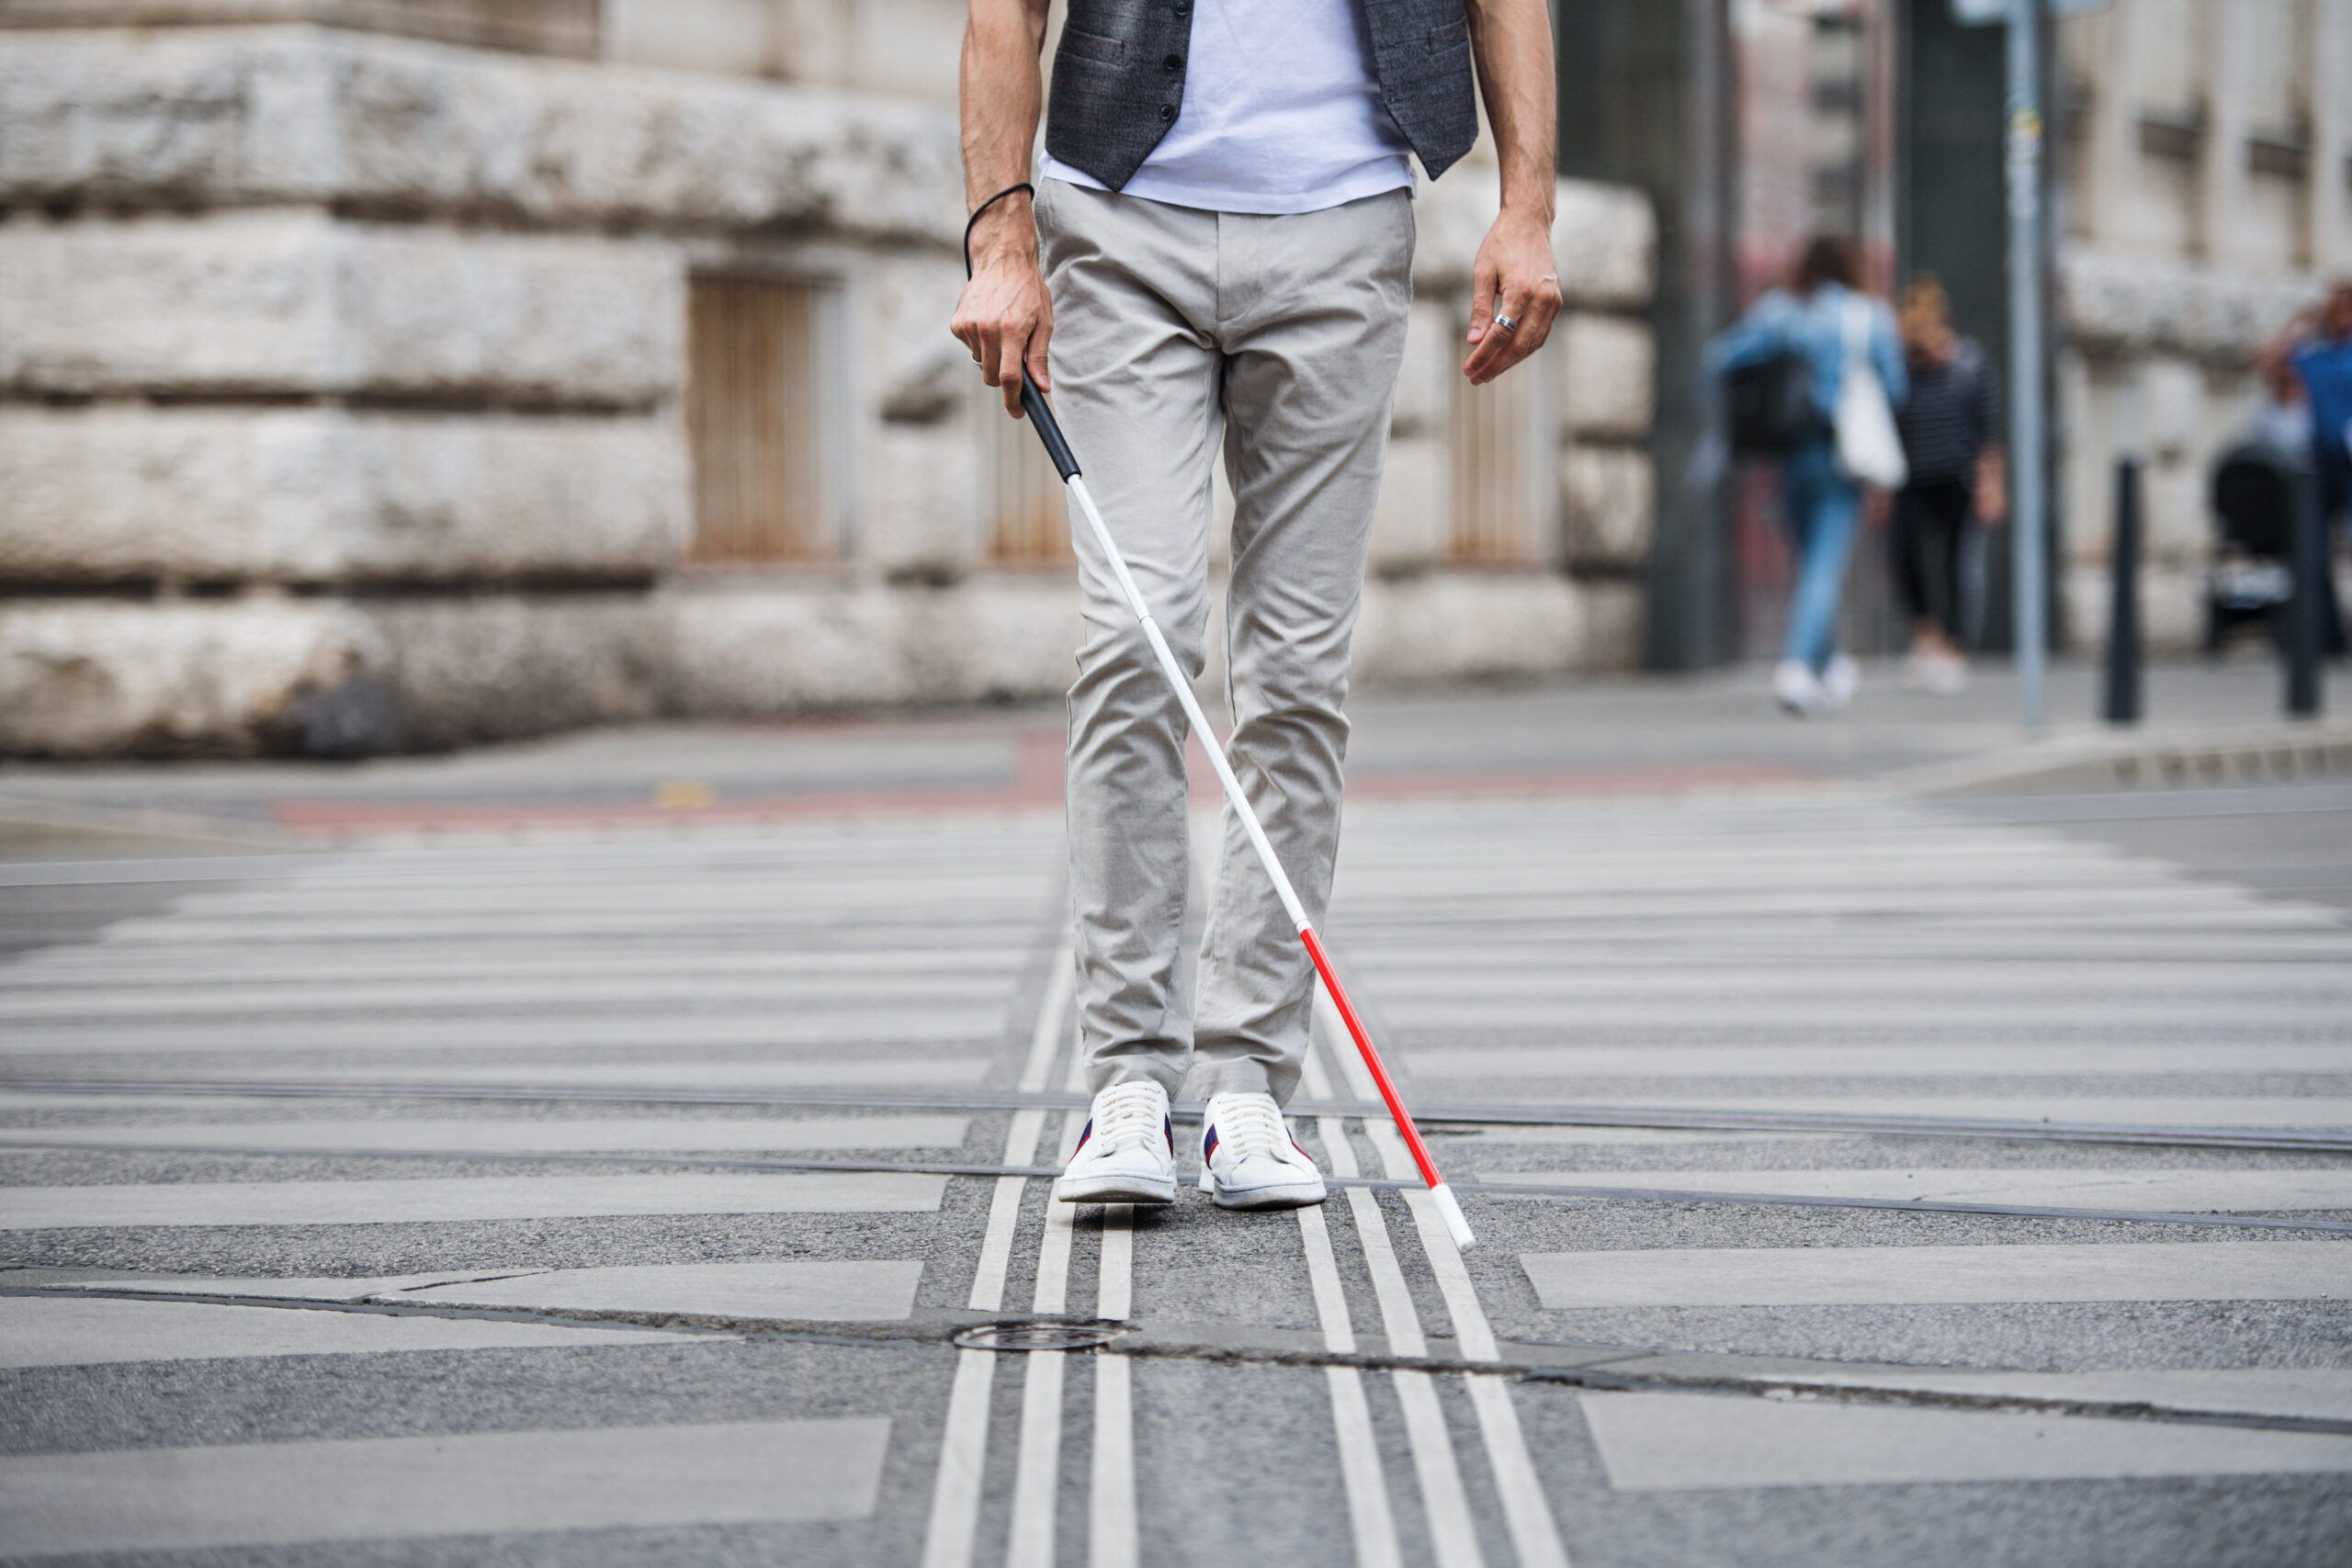 Zjęcie przedstawia osobę niewidomą z laską od pasa w dół, przechodzącą przez przejście dla pieszych.